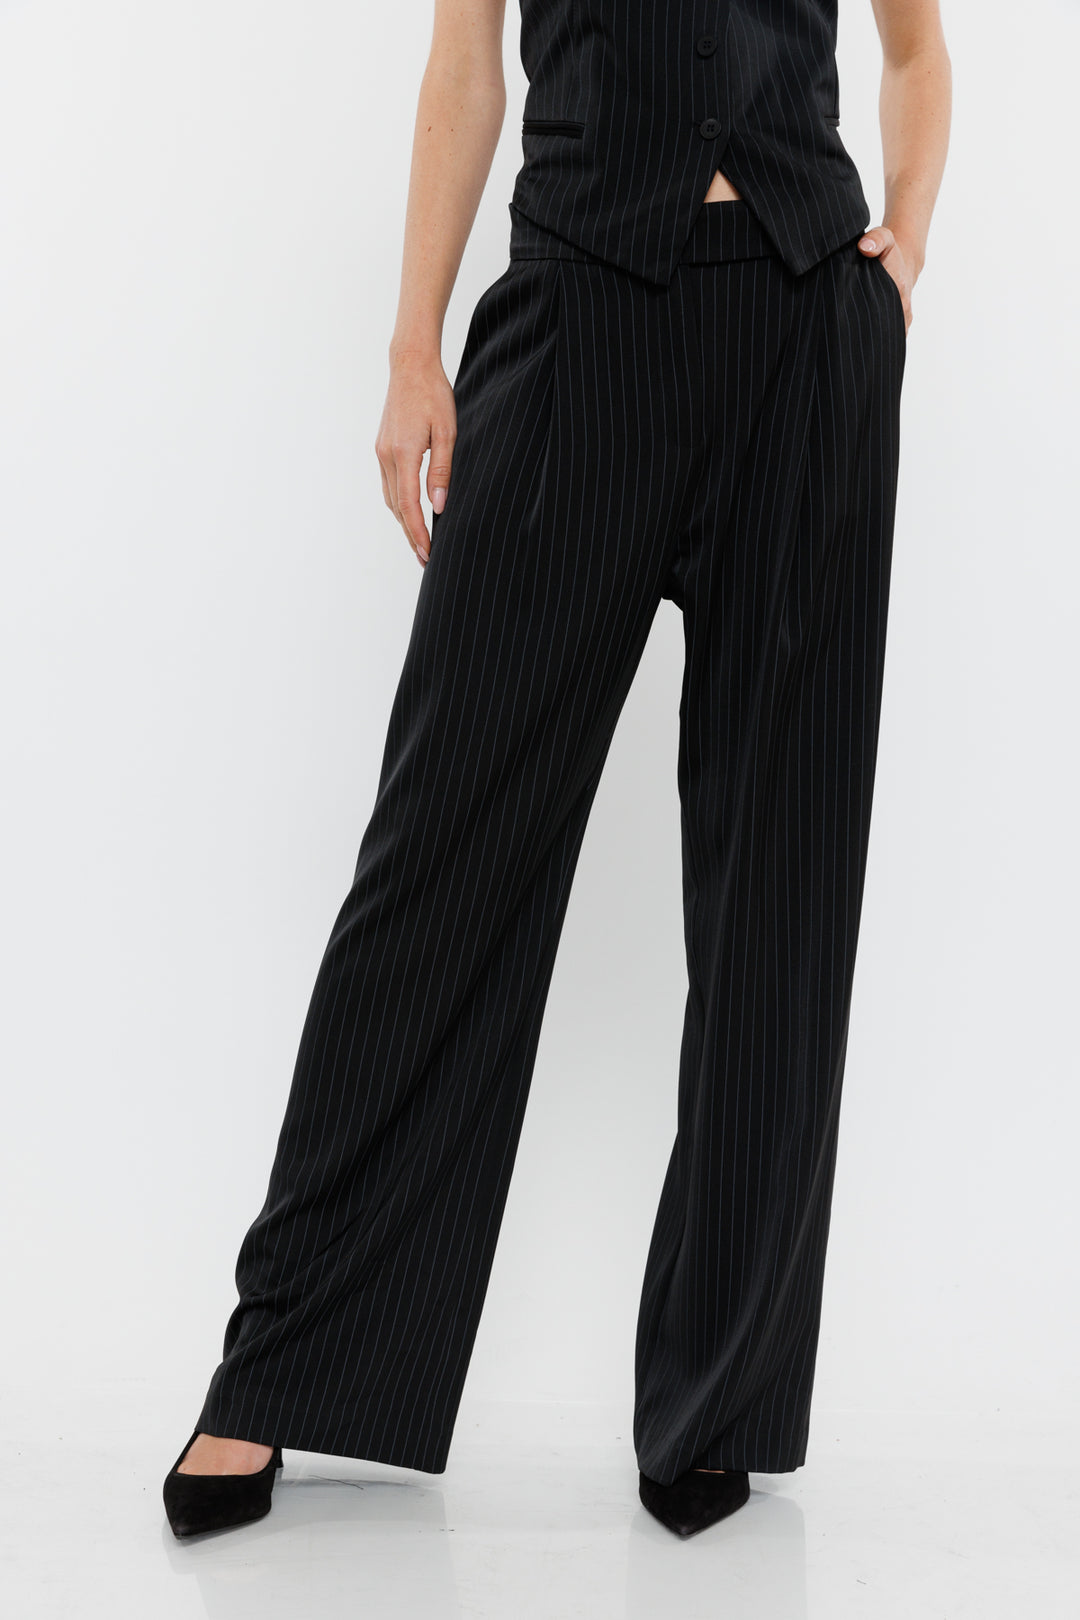 מכנסיים רחבים Vera בצבע שחור/פינסטרייפ